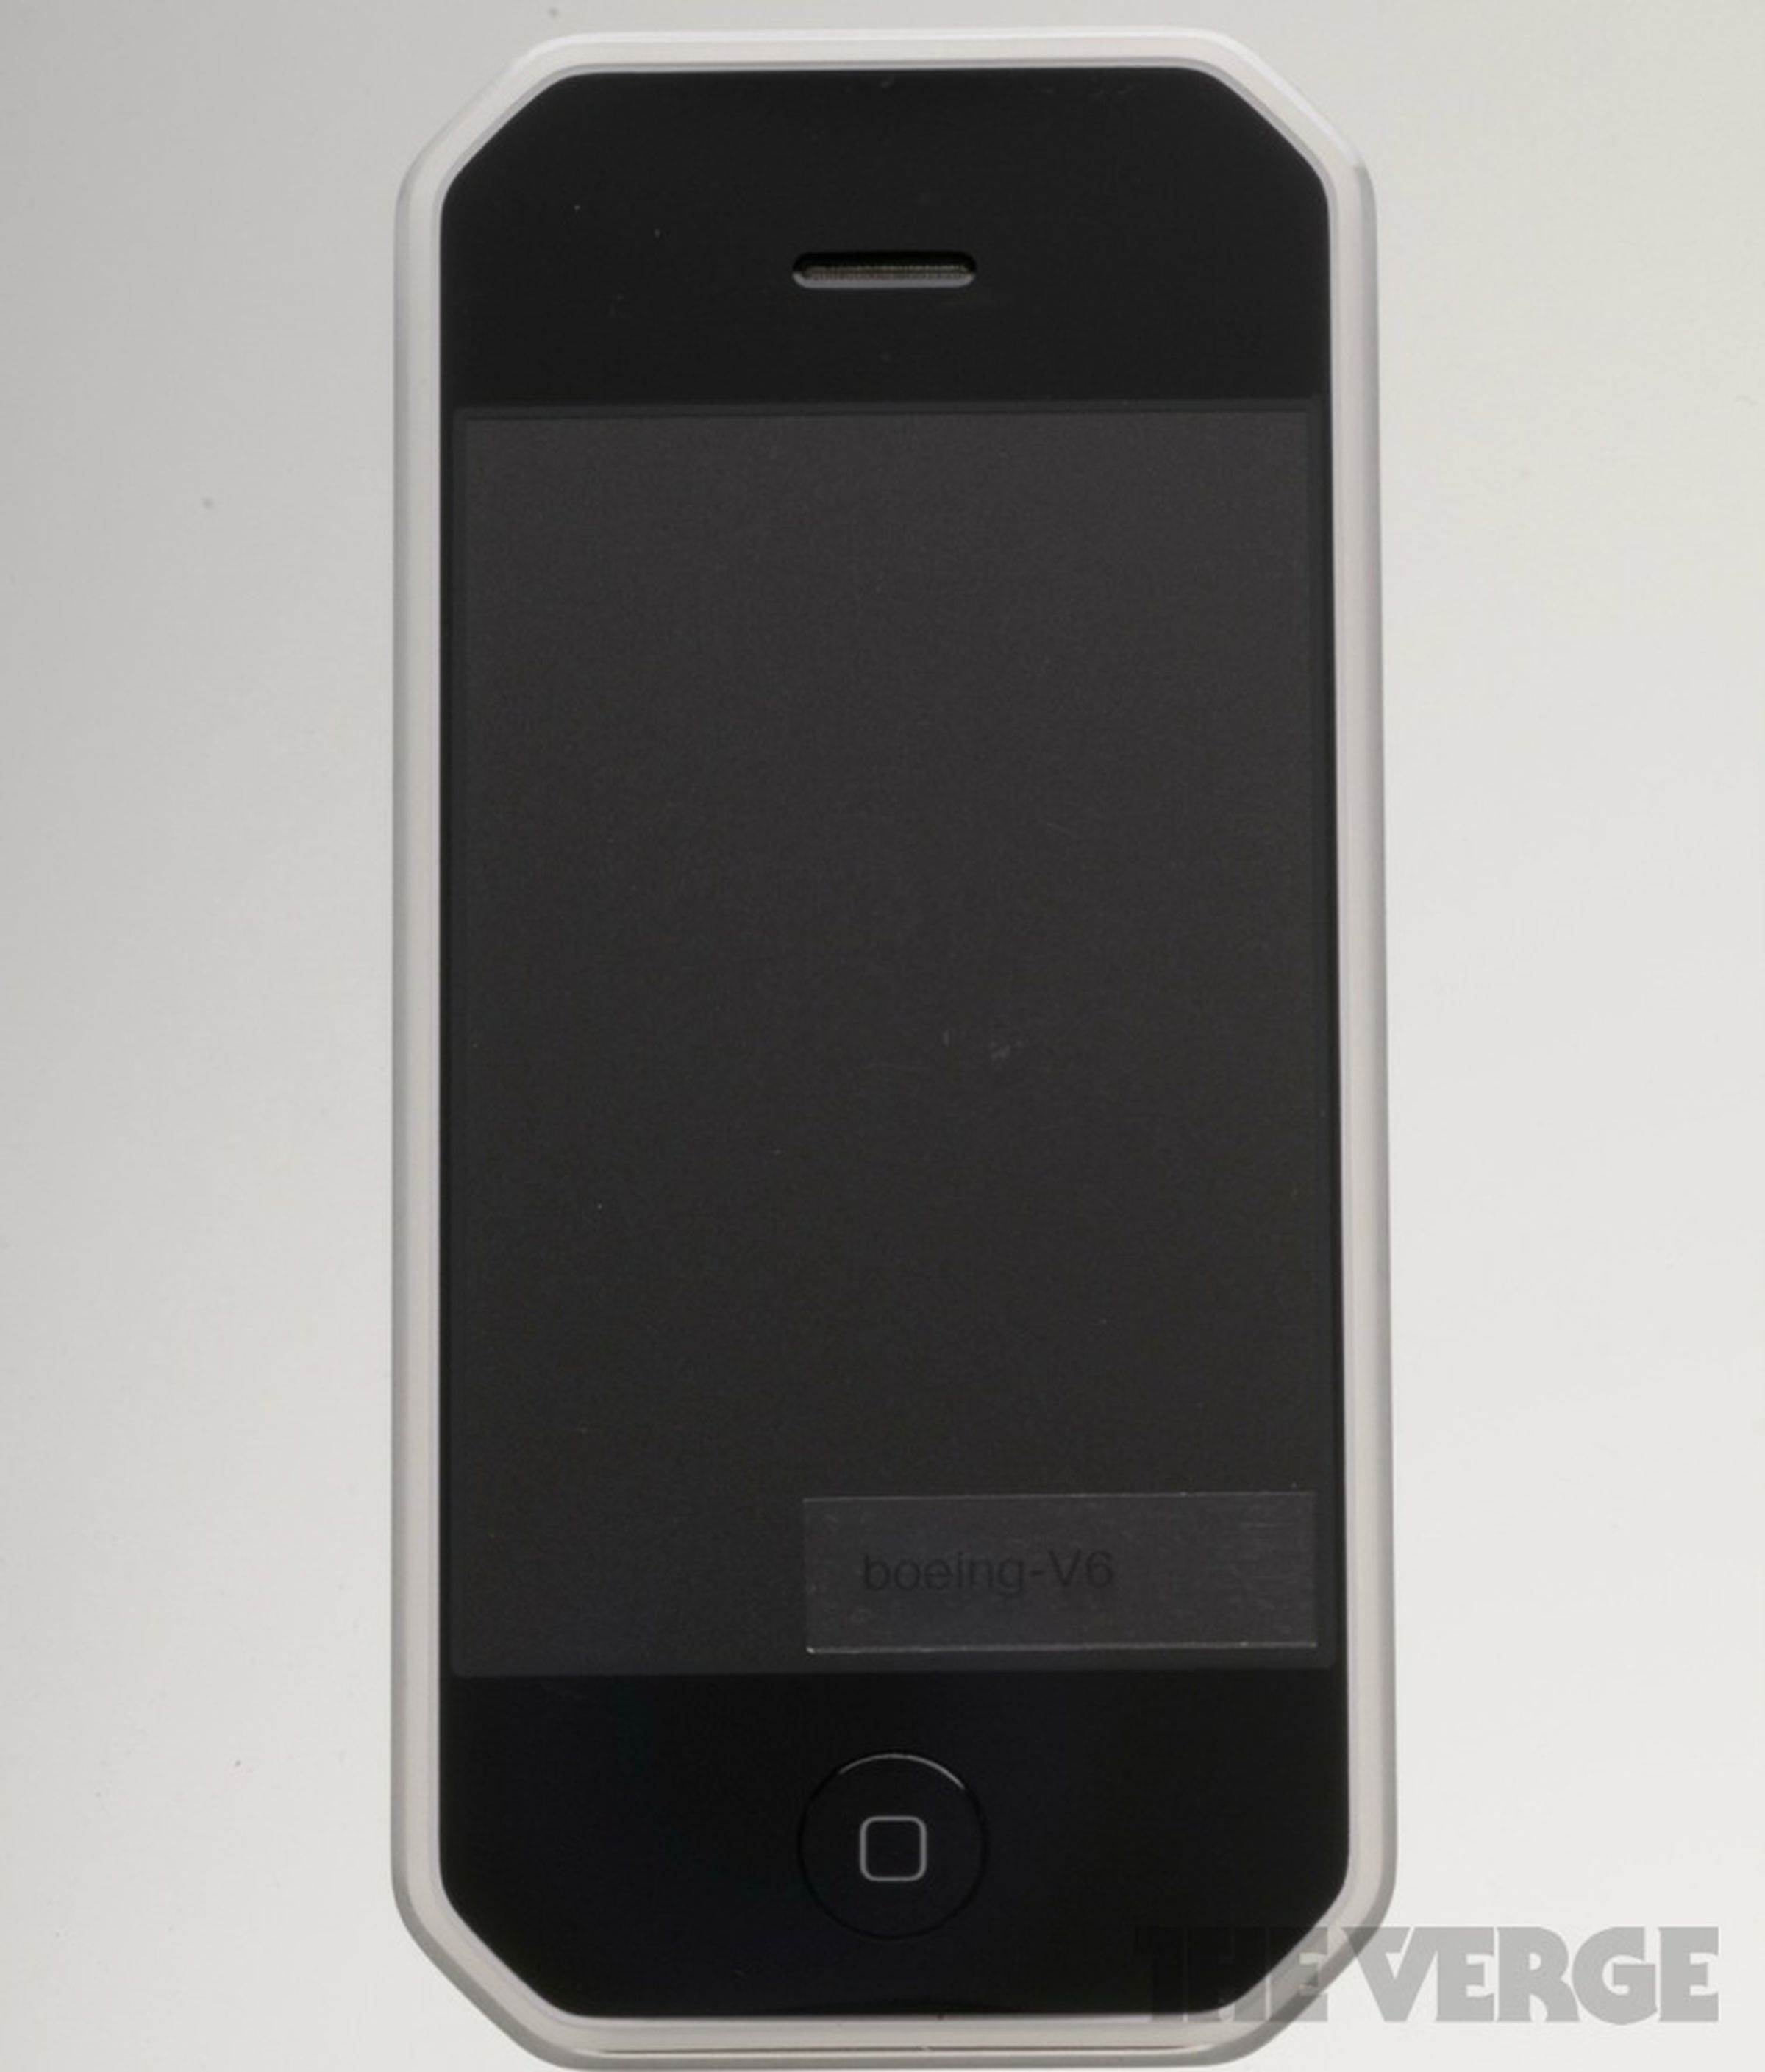 Apple iPhone prototype photos